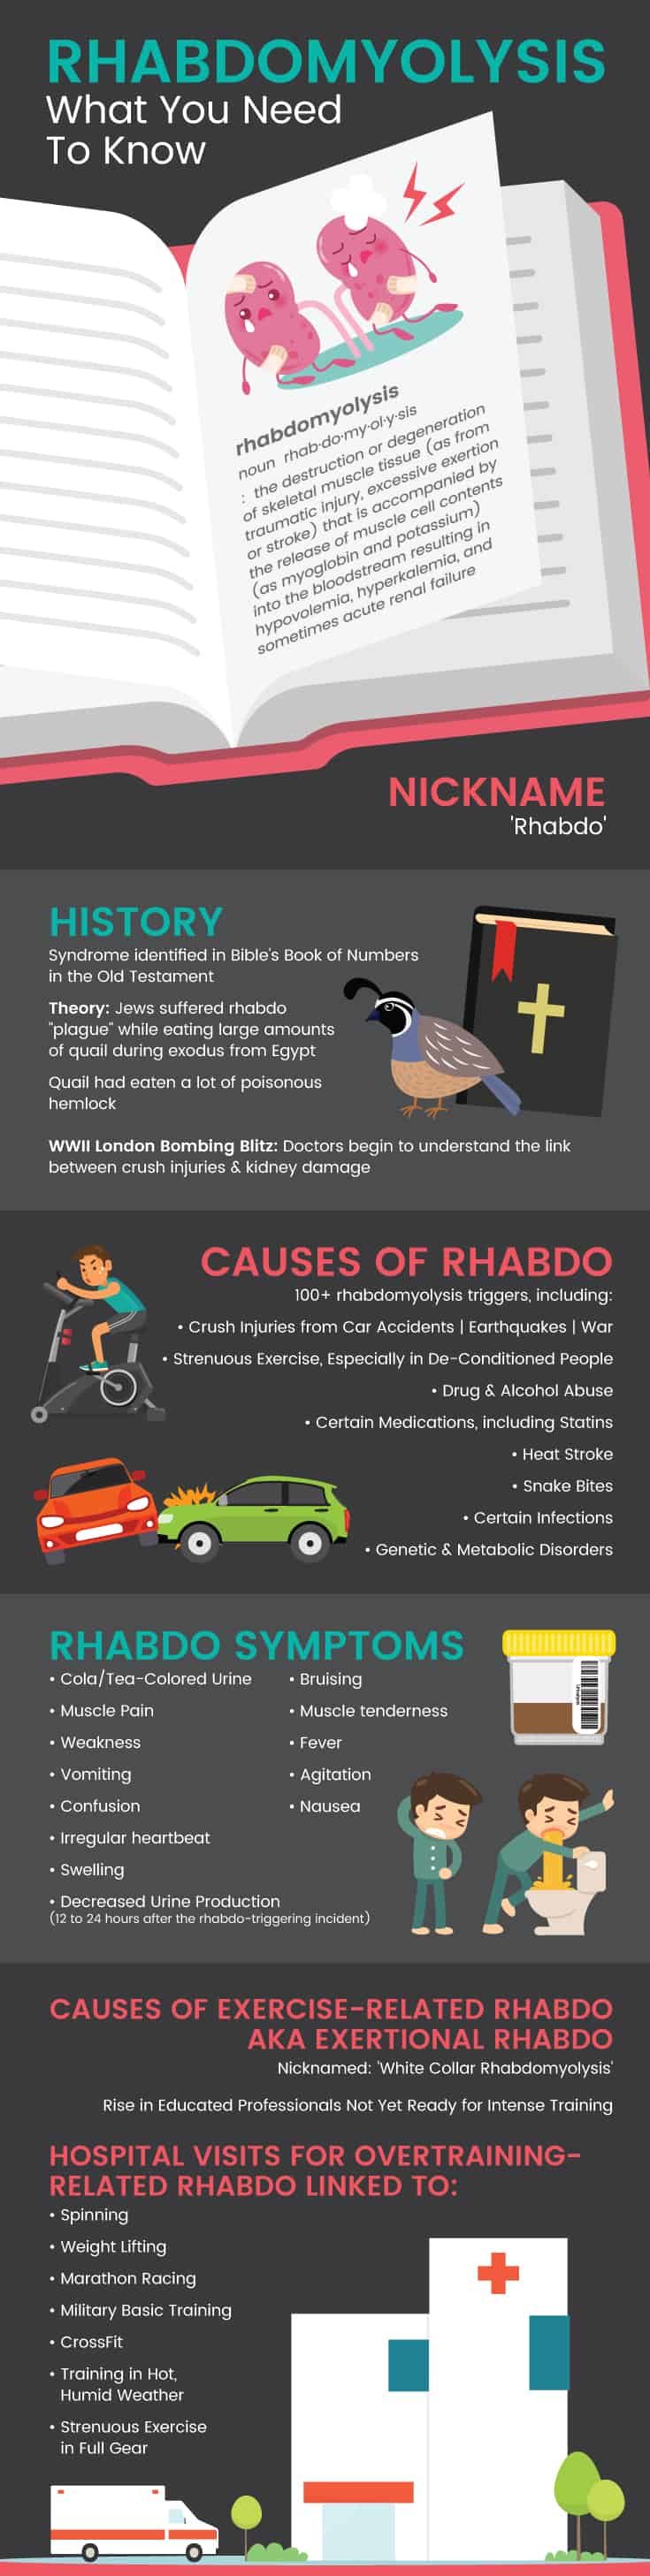 Dangers of Rhabdo or Rhabdomyolysis - Dr. Axe